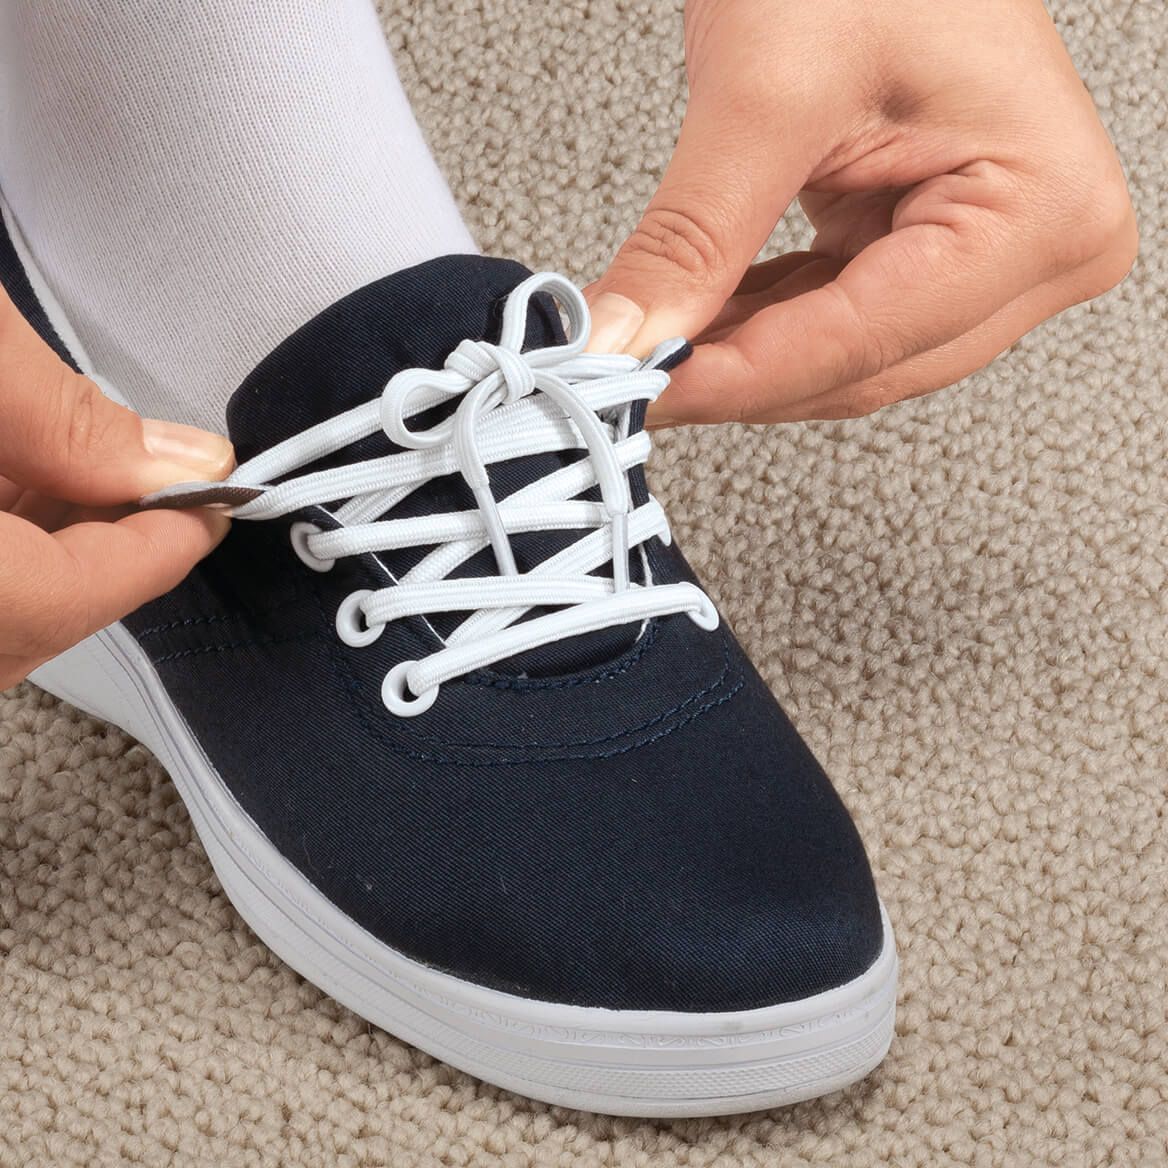 Silver Steps™ Elastic Shoe Laces, 3 Pair + '-' + 341204